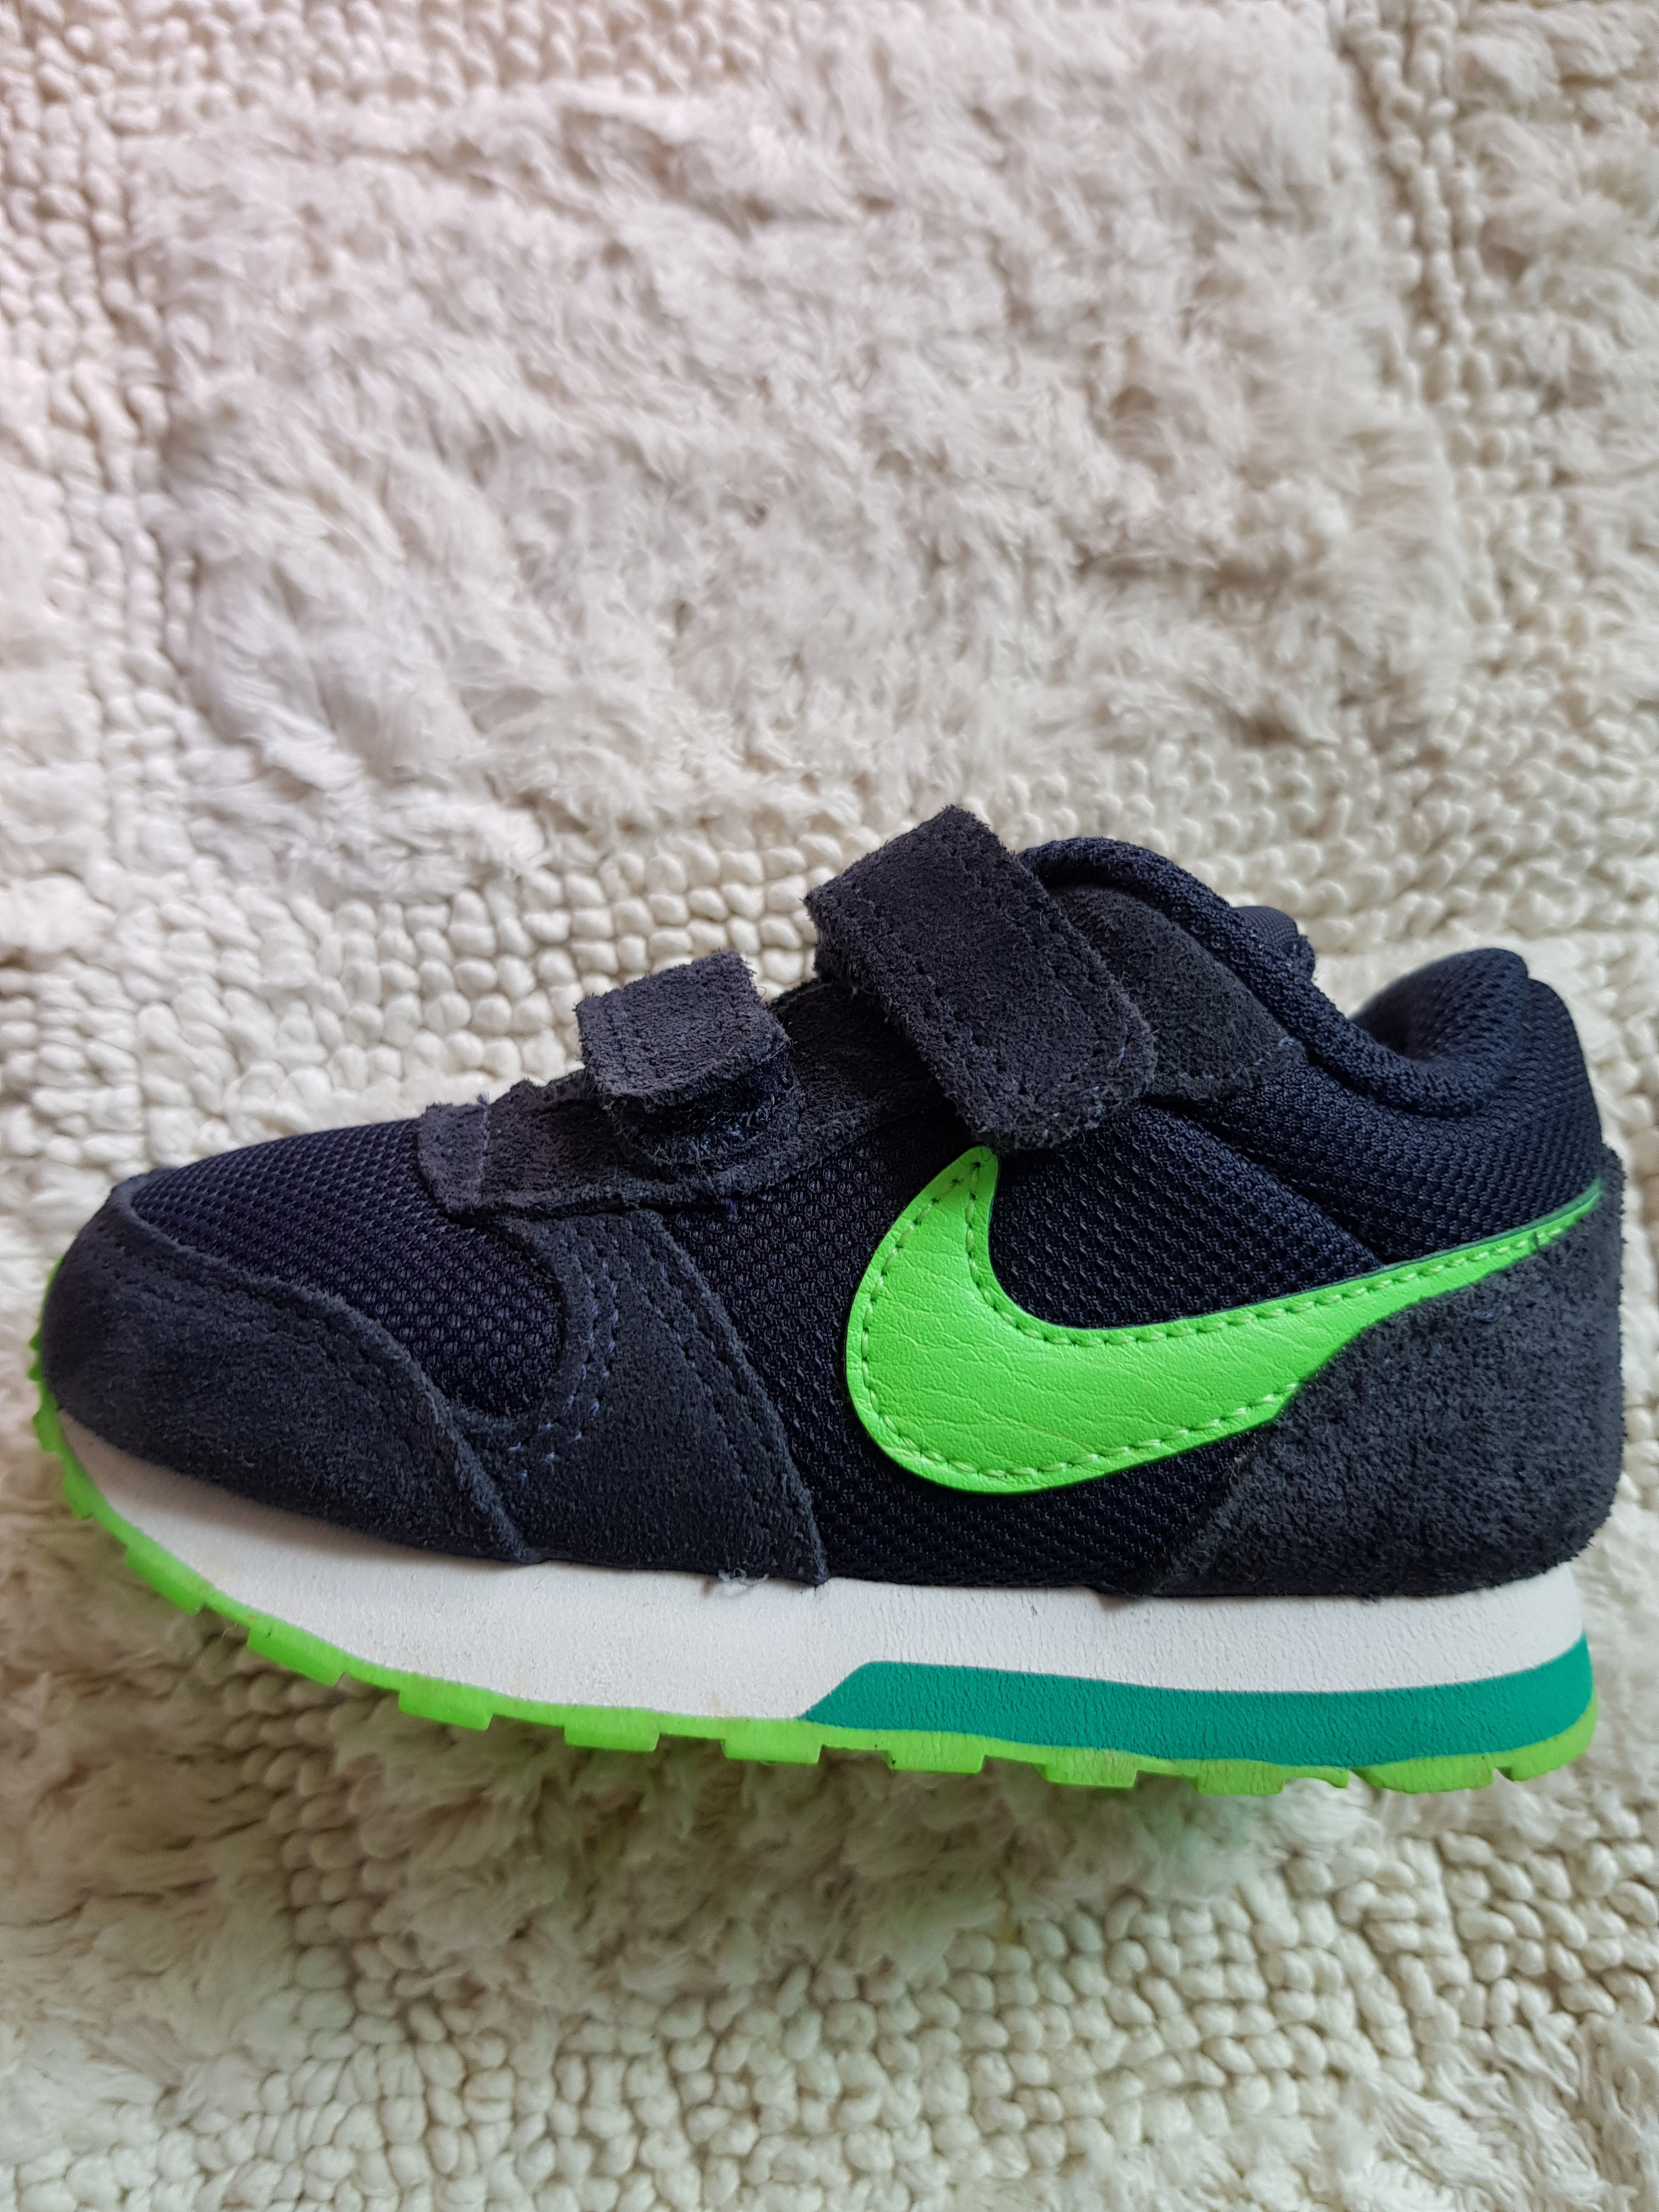 Nike Toddler Boy Shoes, Babies \u0026 Kids 